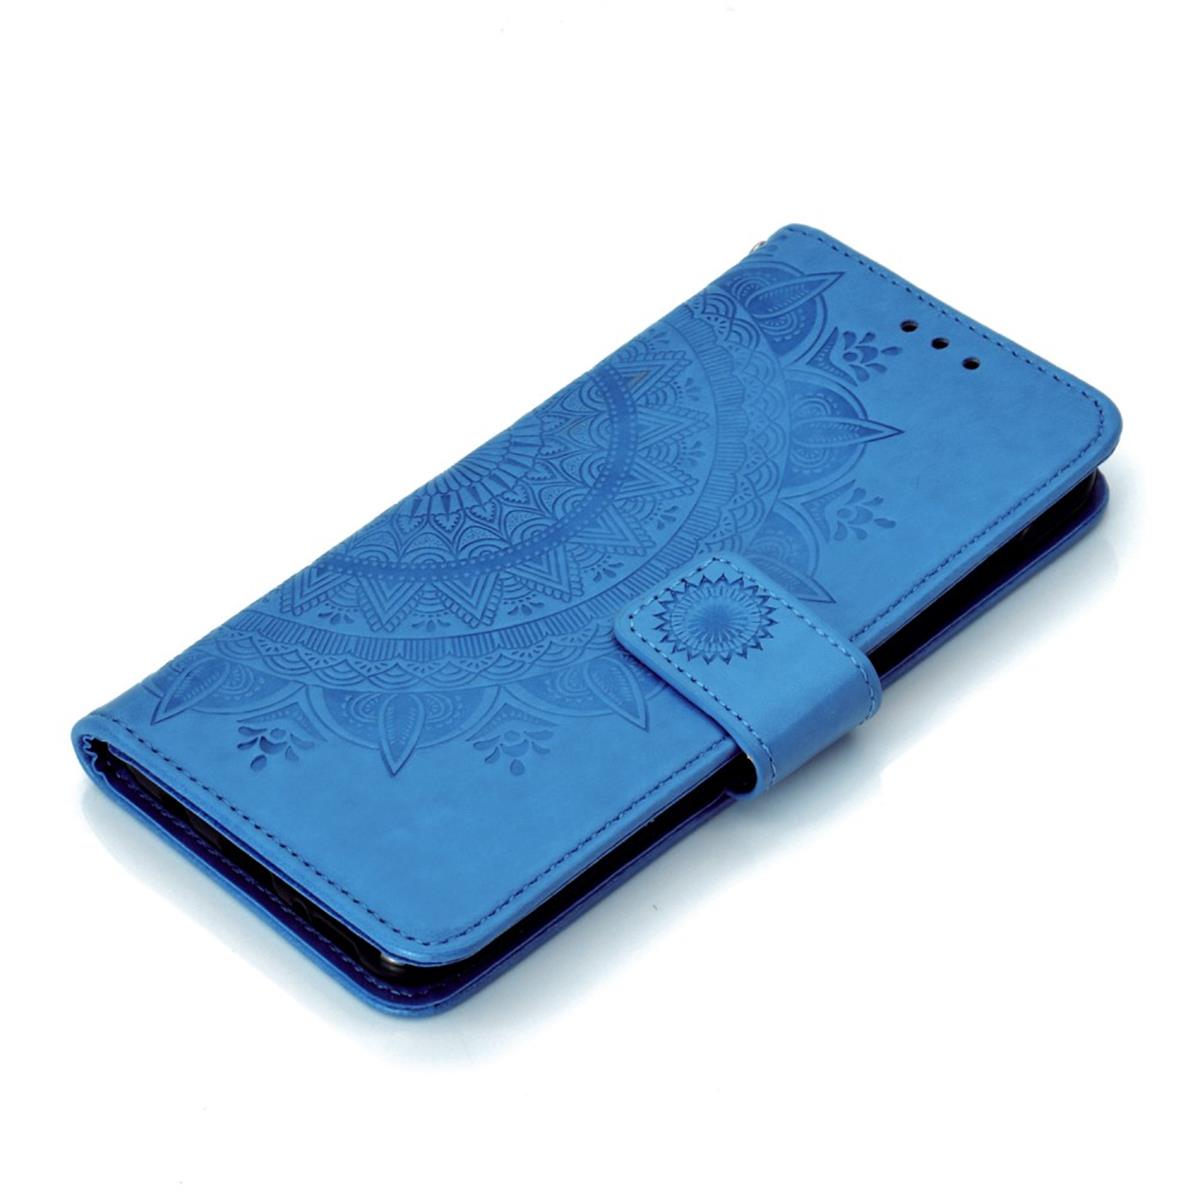 Hülle für Samsung Galaxy A70 Handyhülle Schutz Tasche Case Etui Cover Mandala Blau